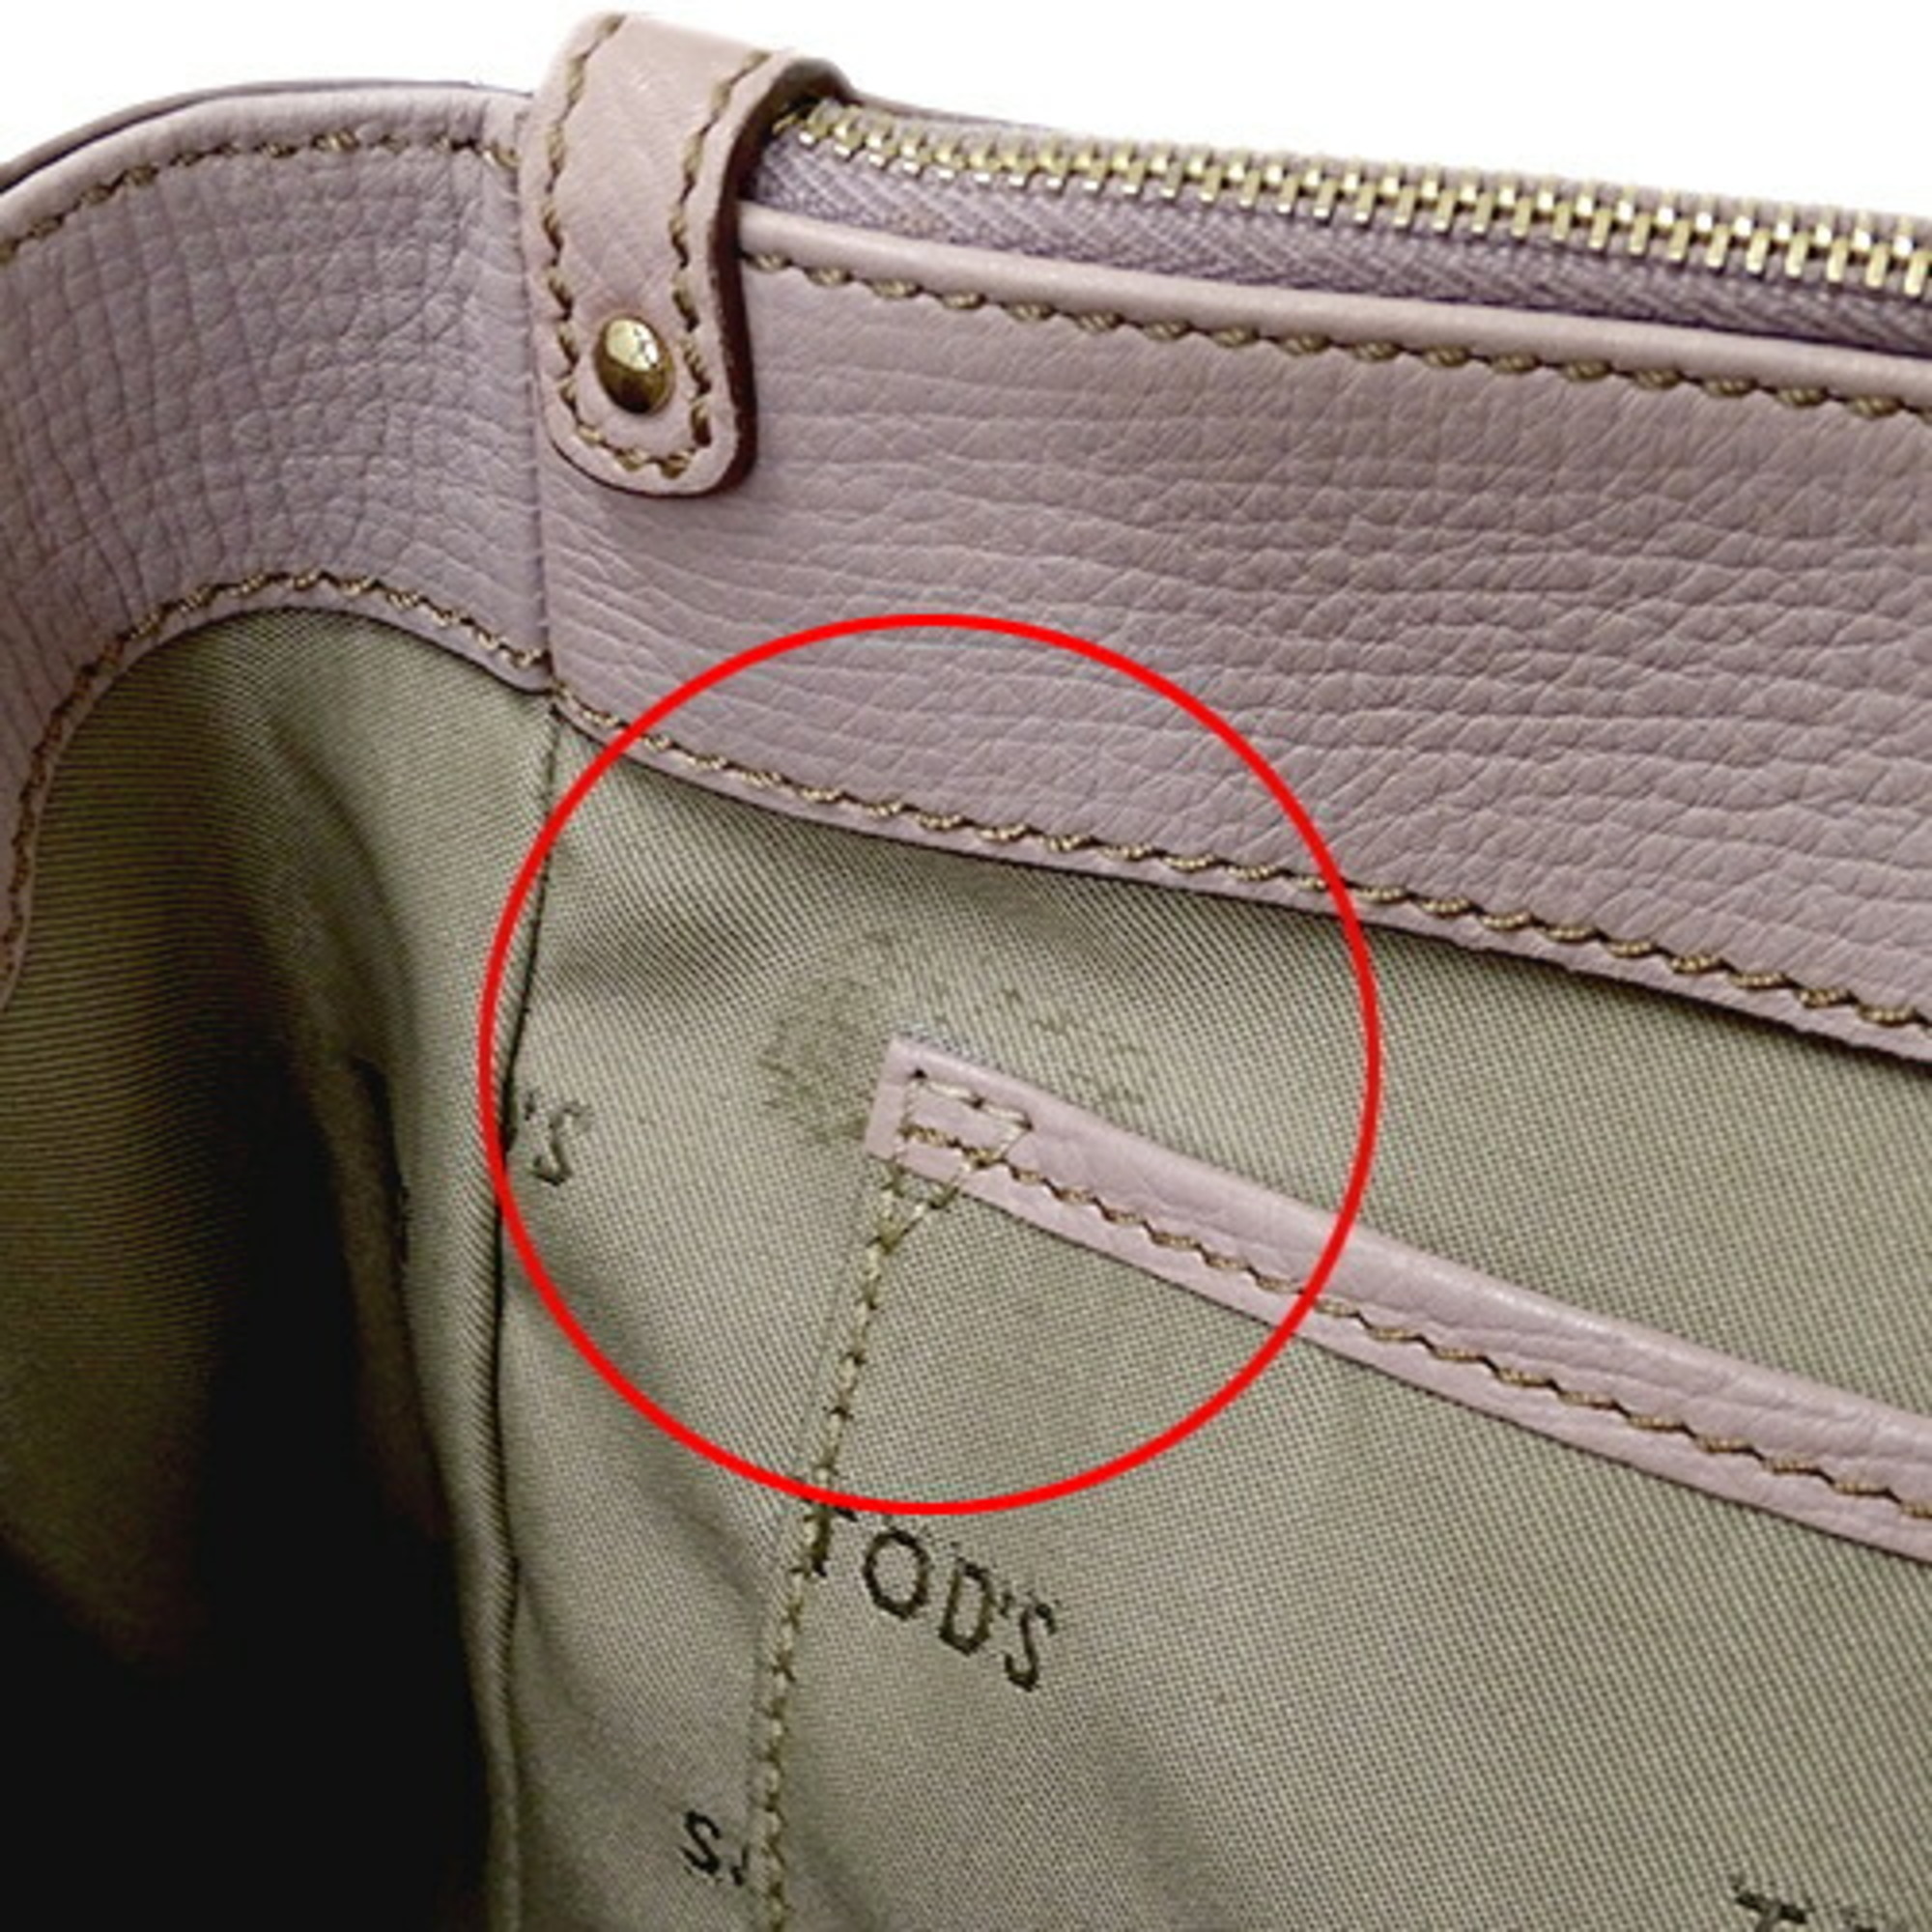 Tod's Women's Handbag Shoulder Bag 2way D-Styling Leather Pink